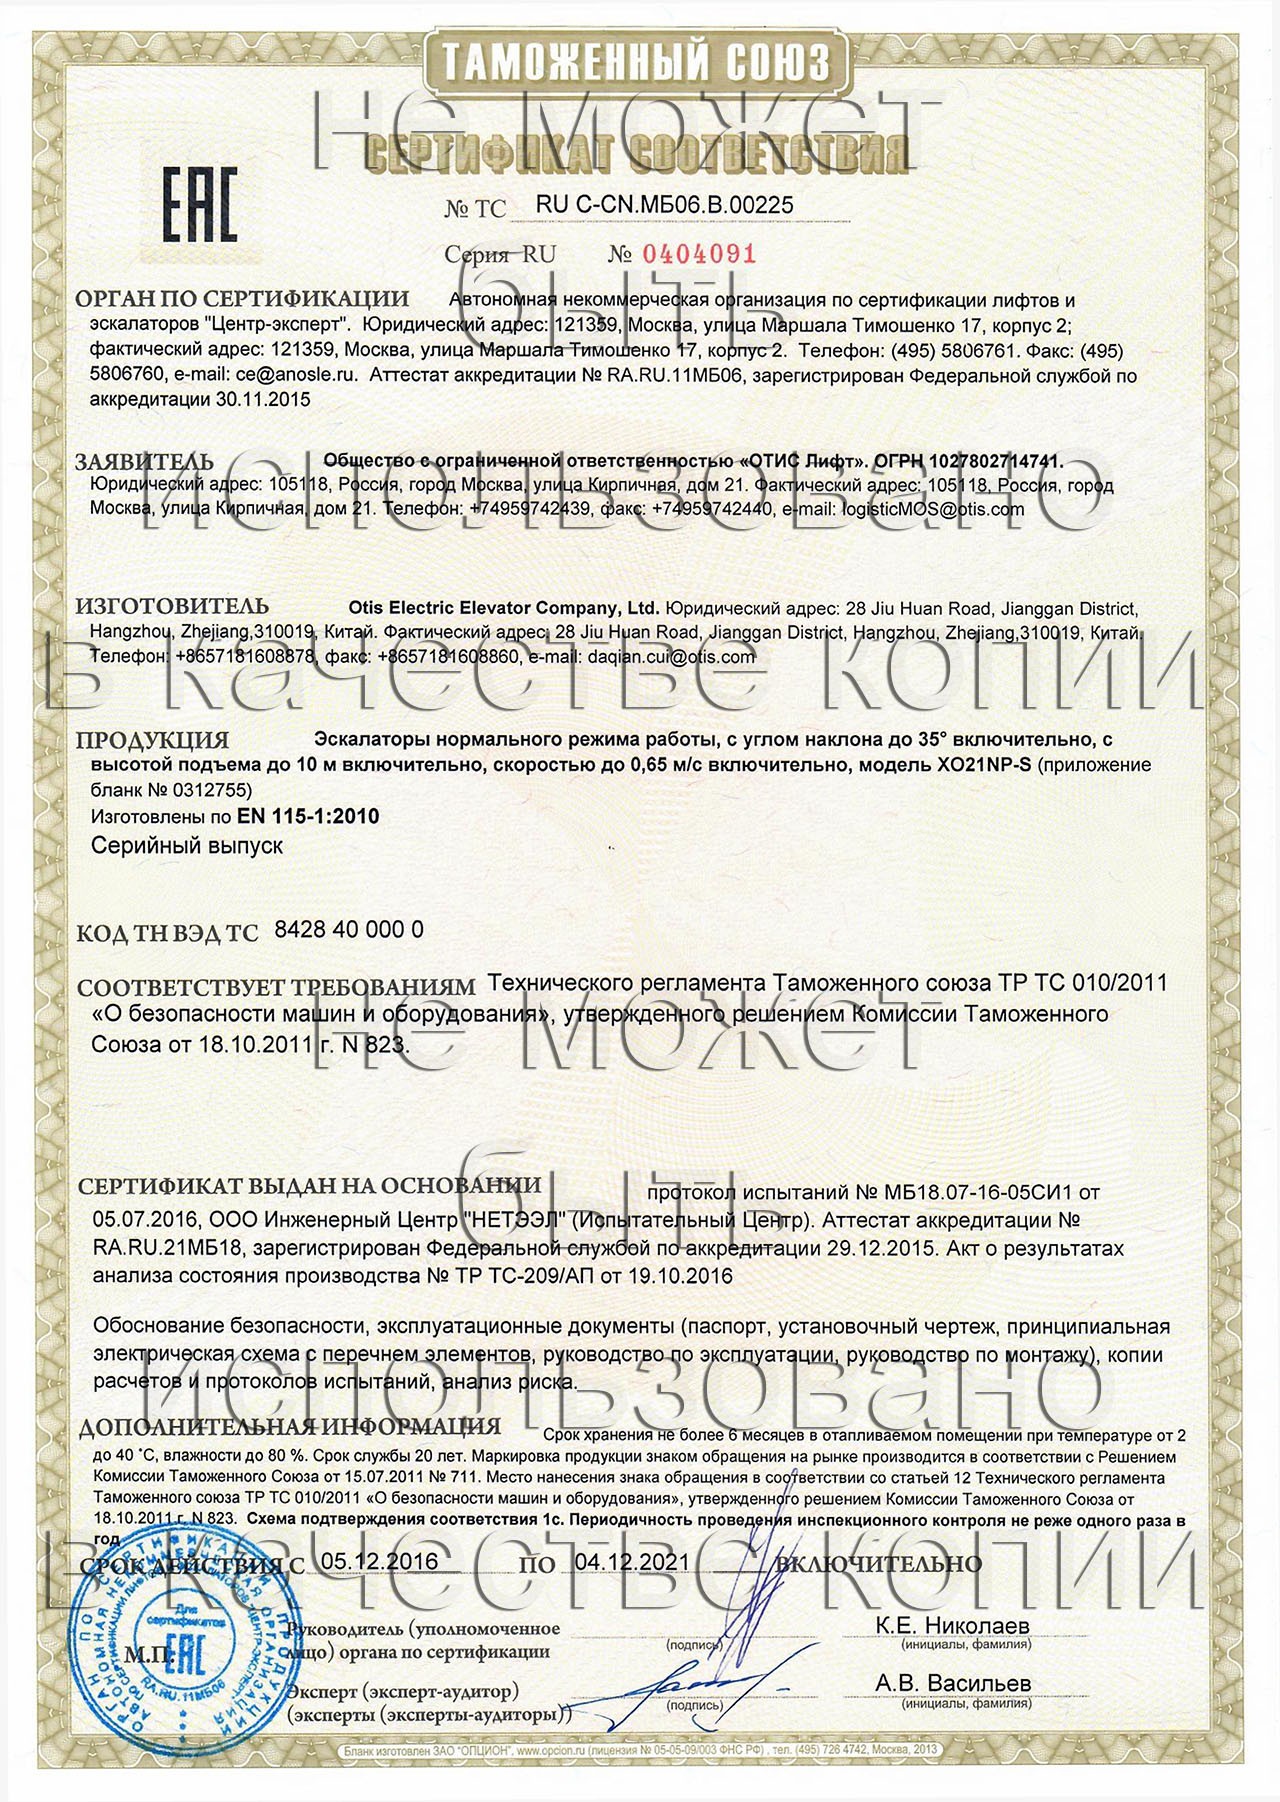 сертификат ТС RU С-CN.МБ06.В.00225 на эскалаторы нормального режима работы